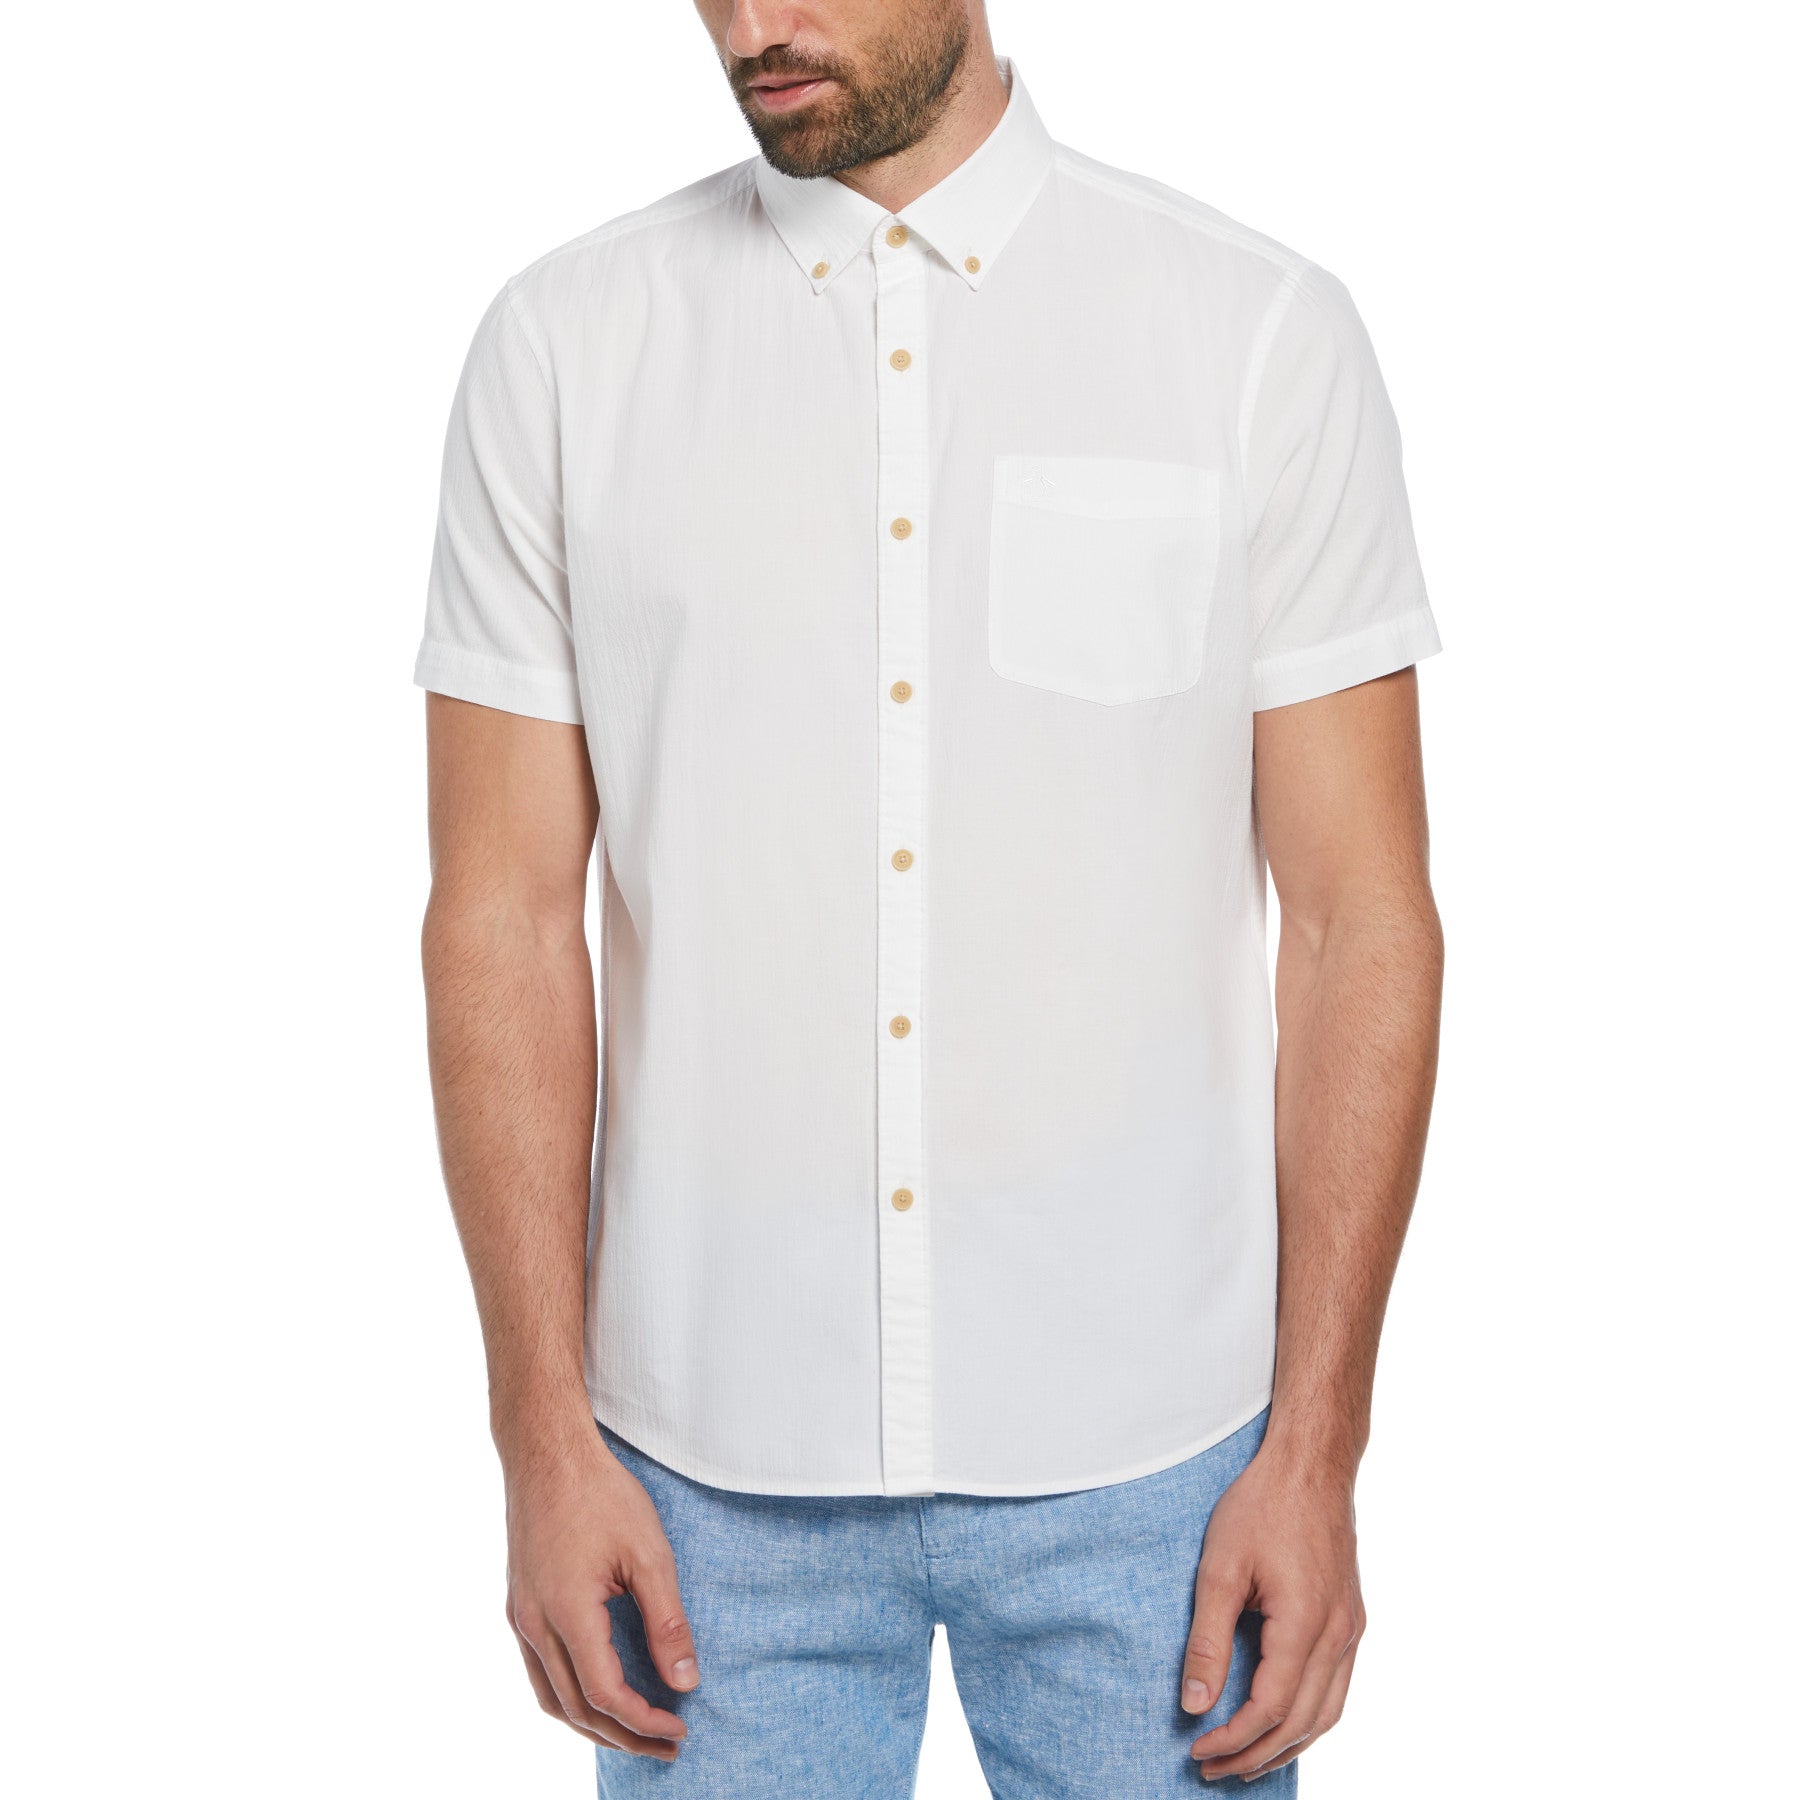 View Seersucker ButtonDown Short Sleeve Shirt In Bright White information